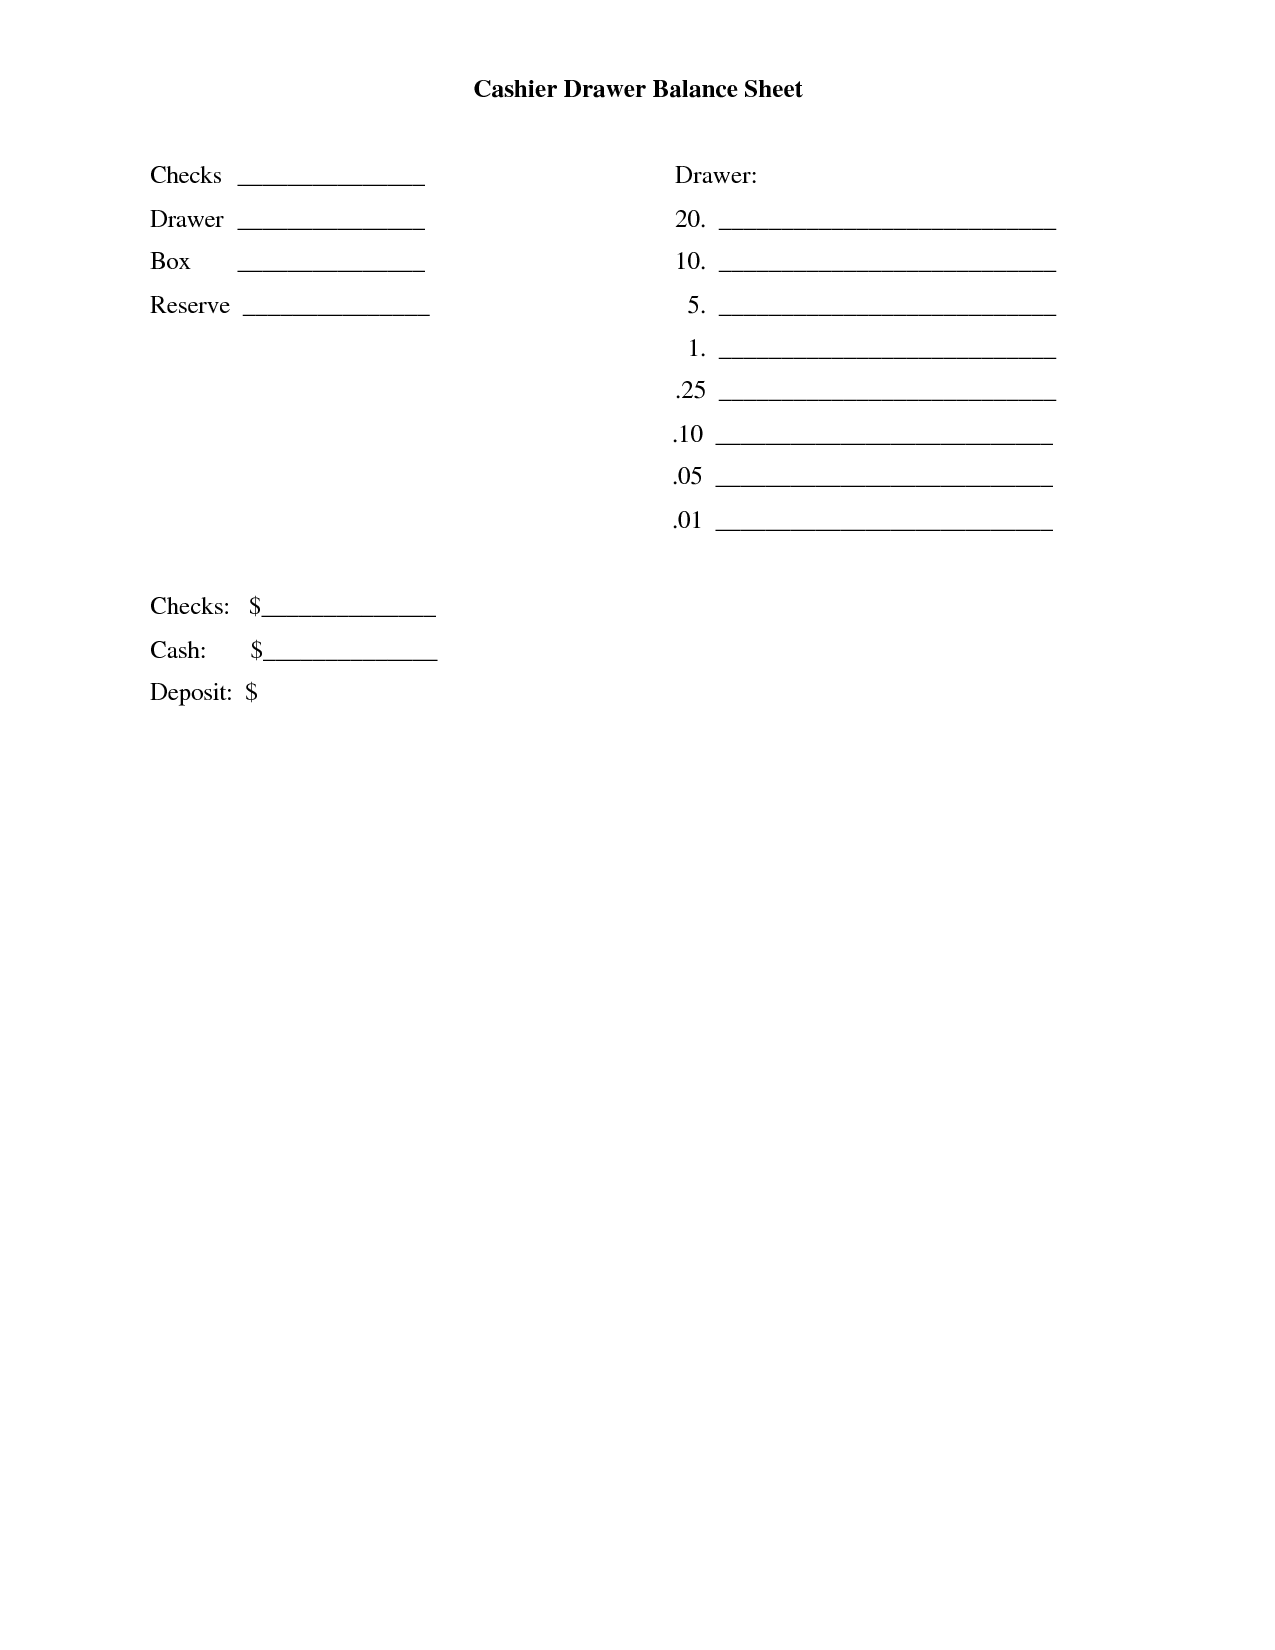 cash drawer balance sheet template | Business adventures 